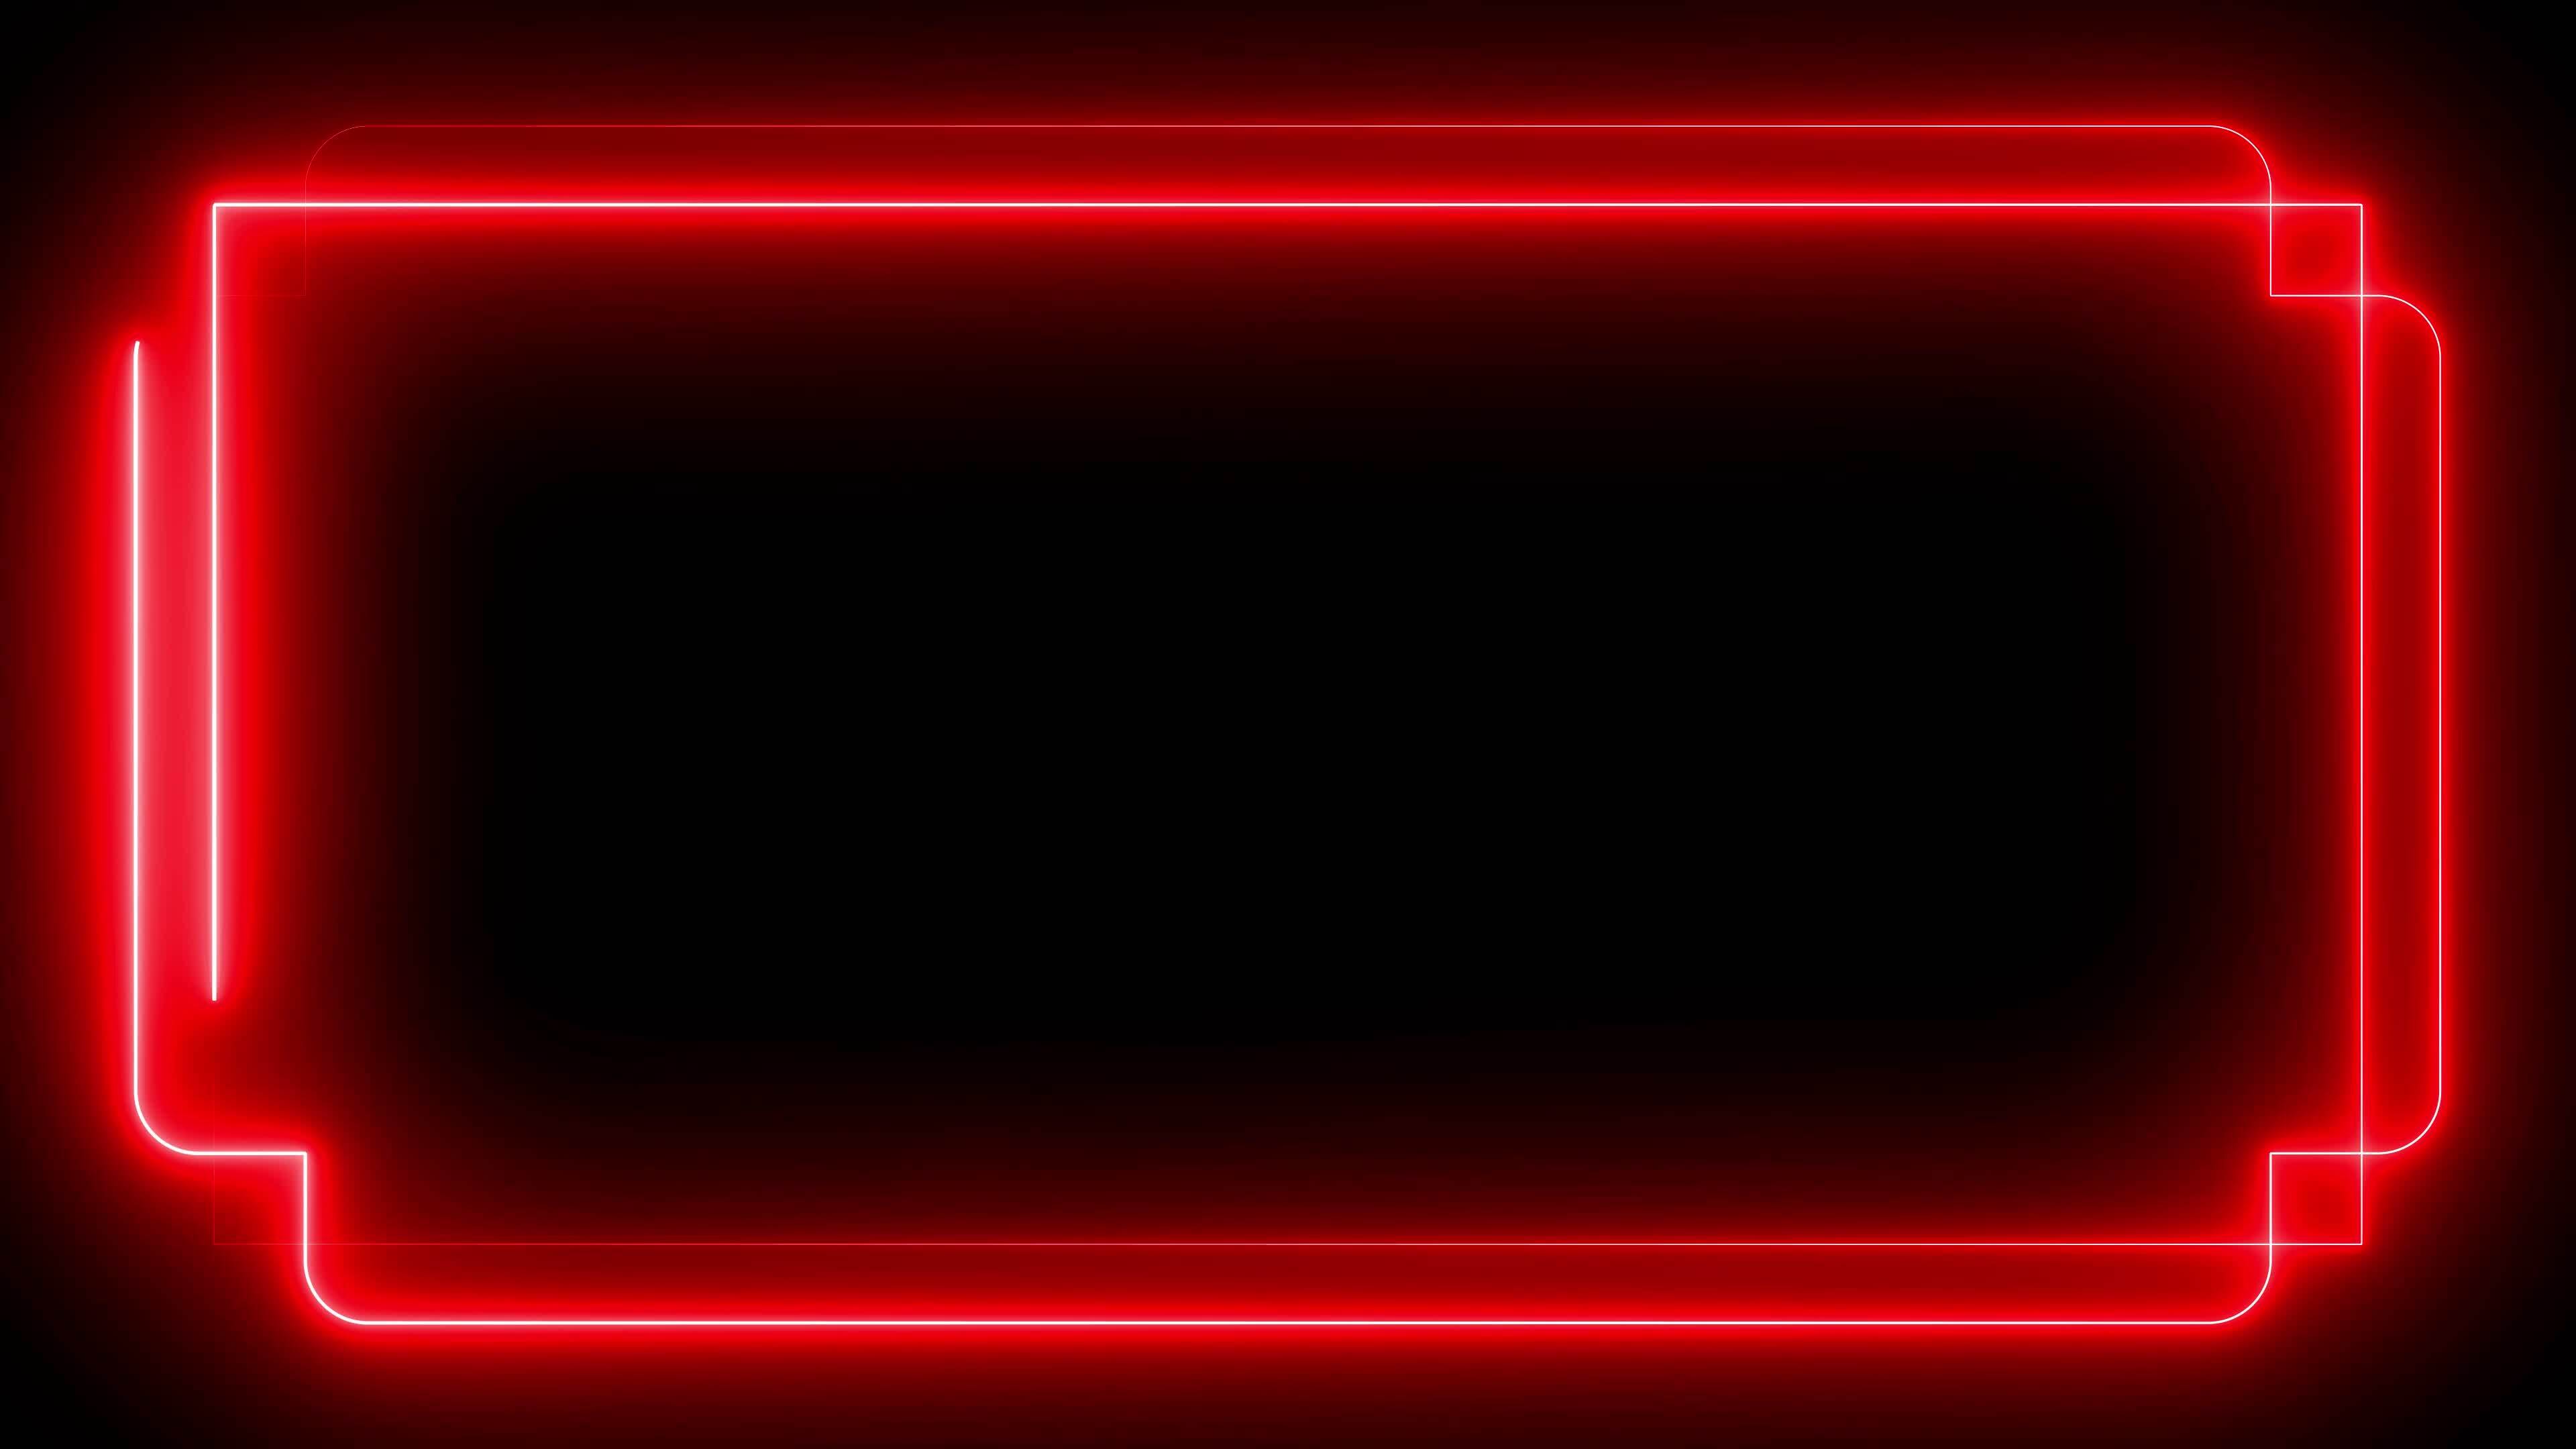 Trang trí ảnh của bạn theo phong cách hiện đại với Red neon frame lighting sáng rực rỡ đầy cuốn hút. Thiết kế đơn giản, tối giản nhưng lại lôi cuốn với sự nổi bật của màu đỏ neon. Nhấn vào để thưởng thức tính thẩm mĩ và hiệu ứng ánh sáng độc đáo.